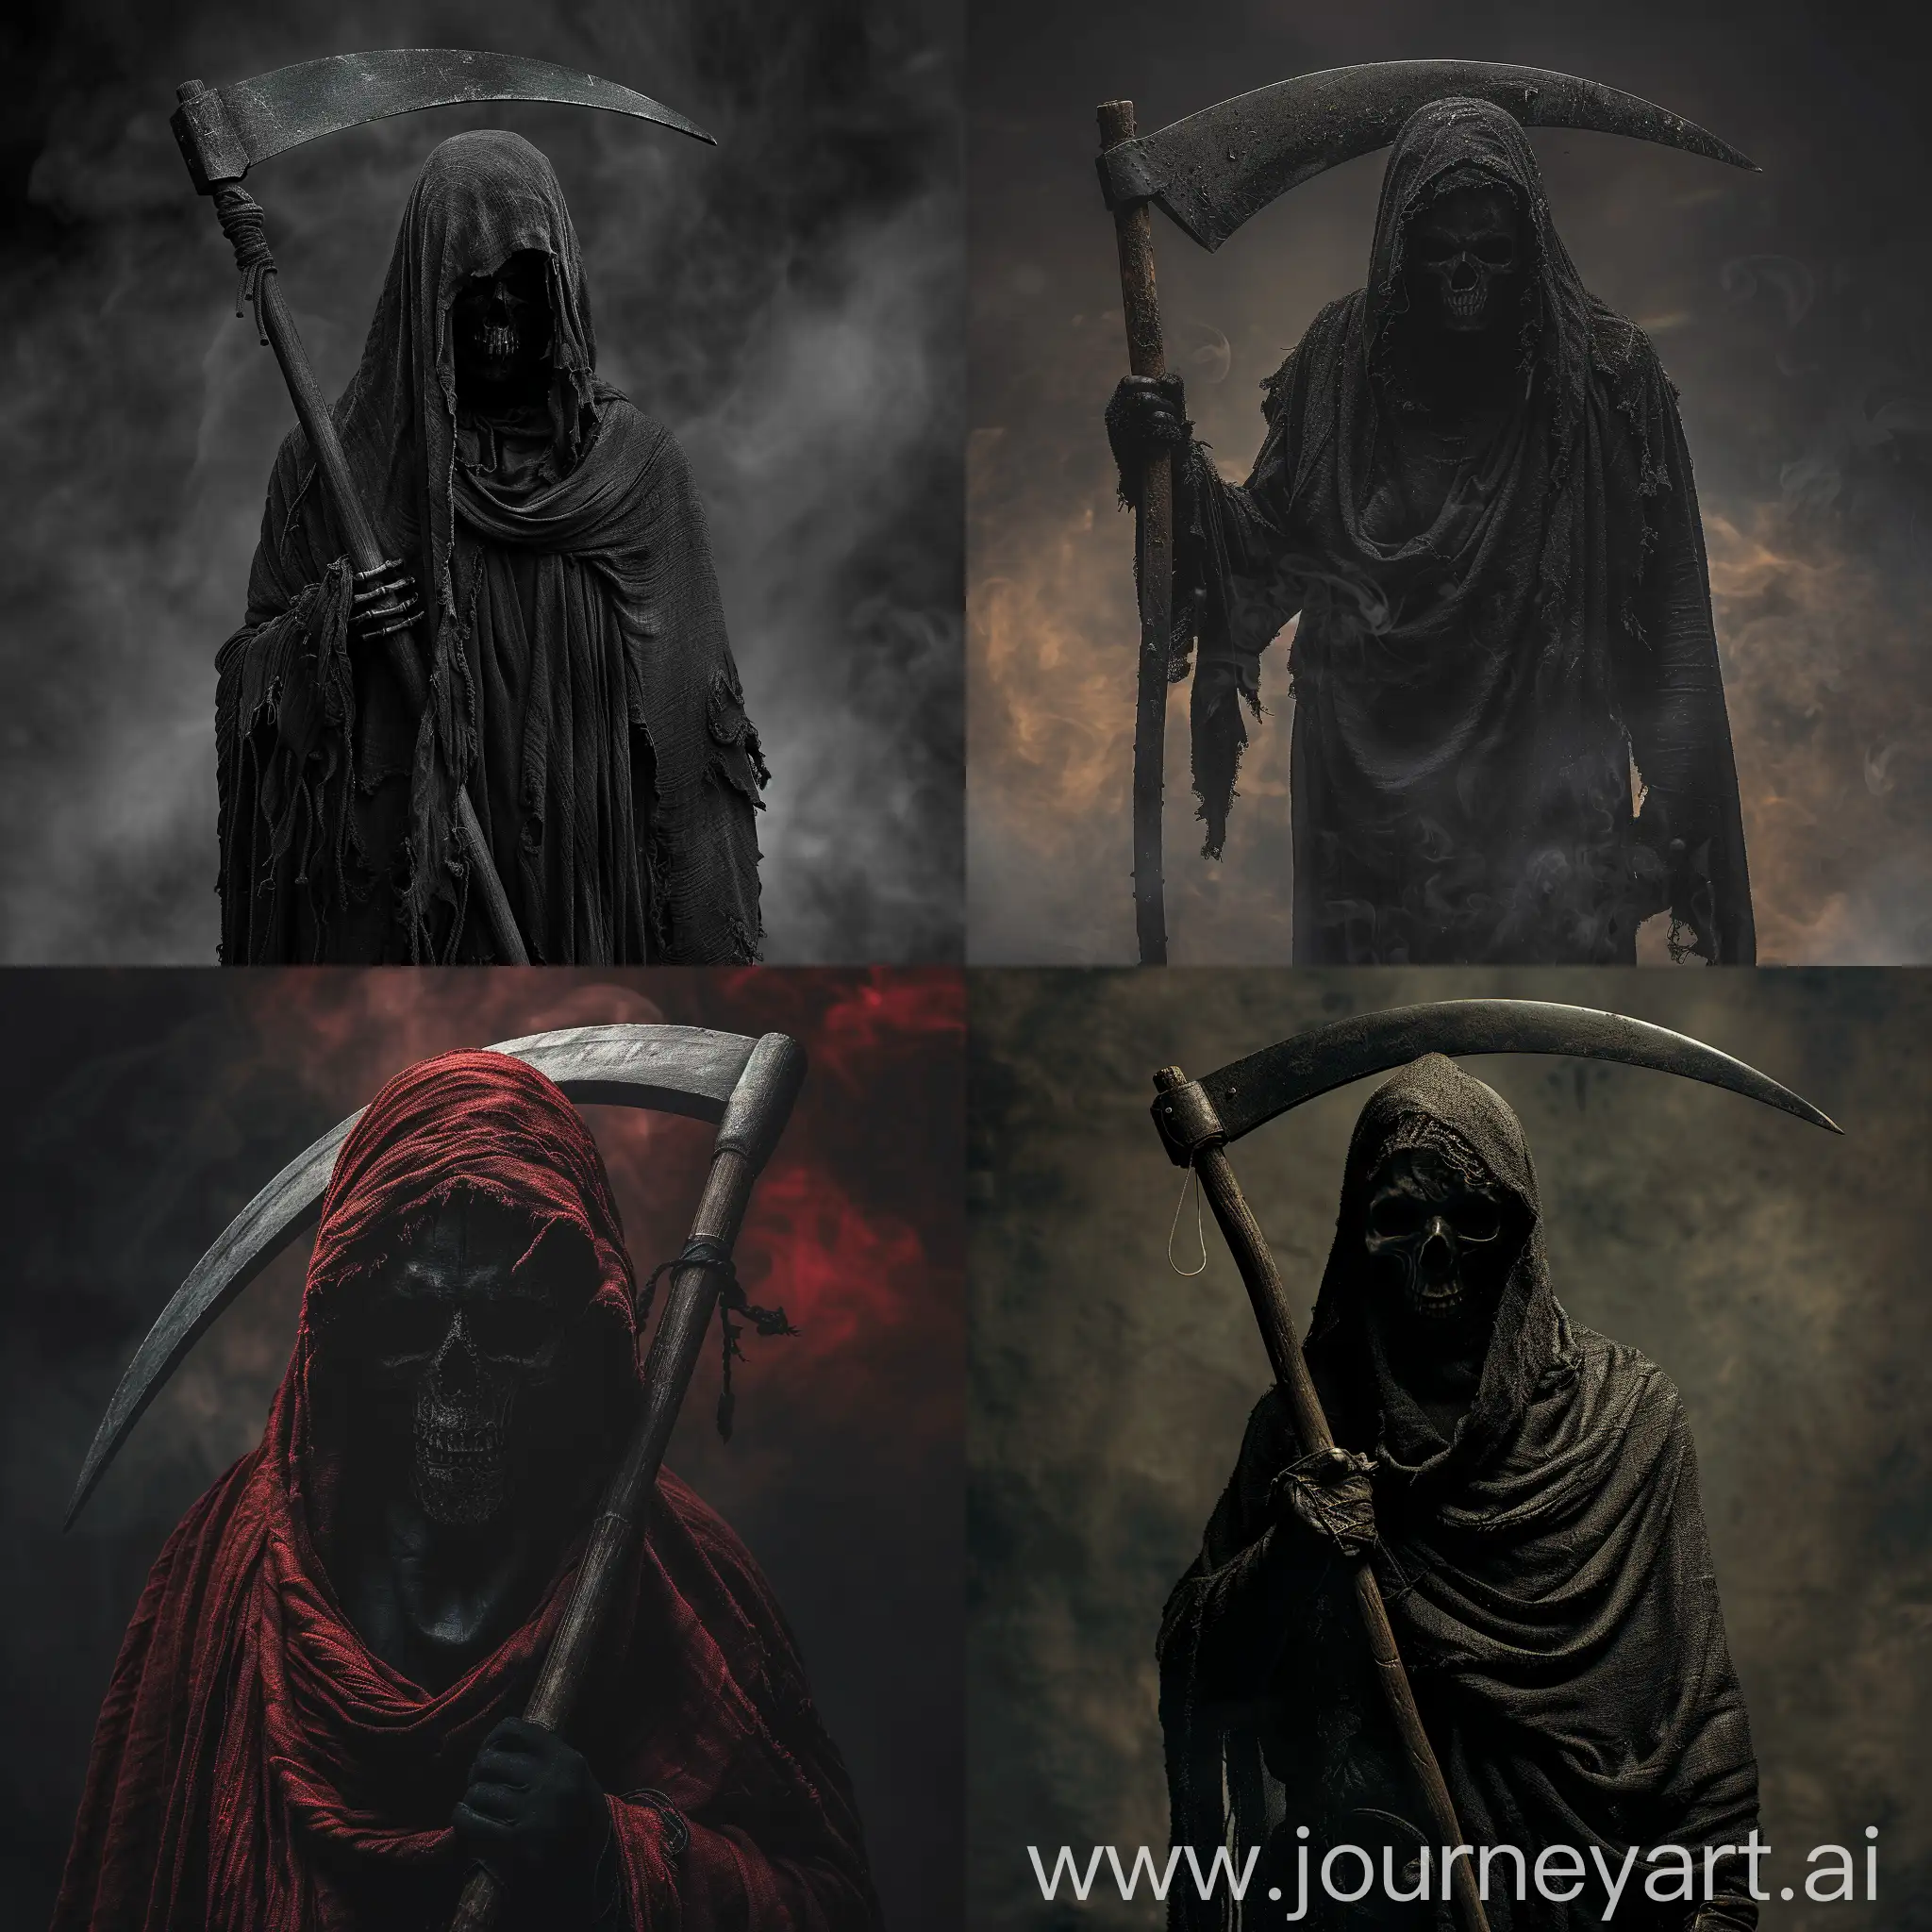 Grim-Reaper-Holding-Scythe-in-Realistic-4K-Art